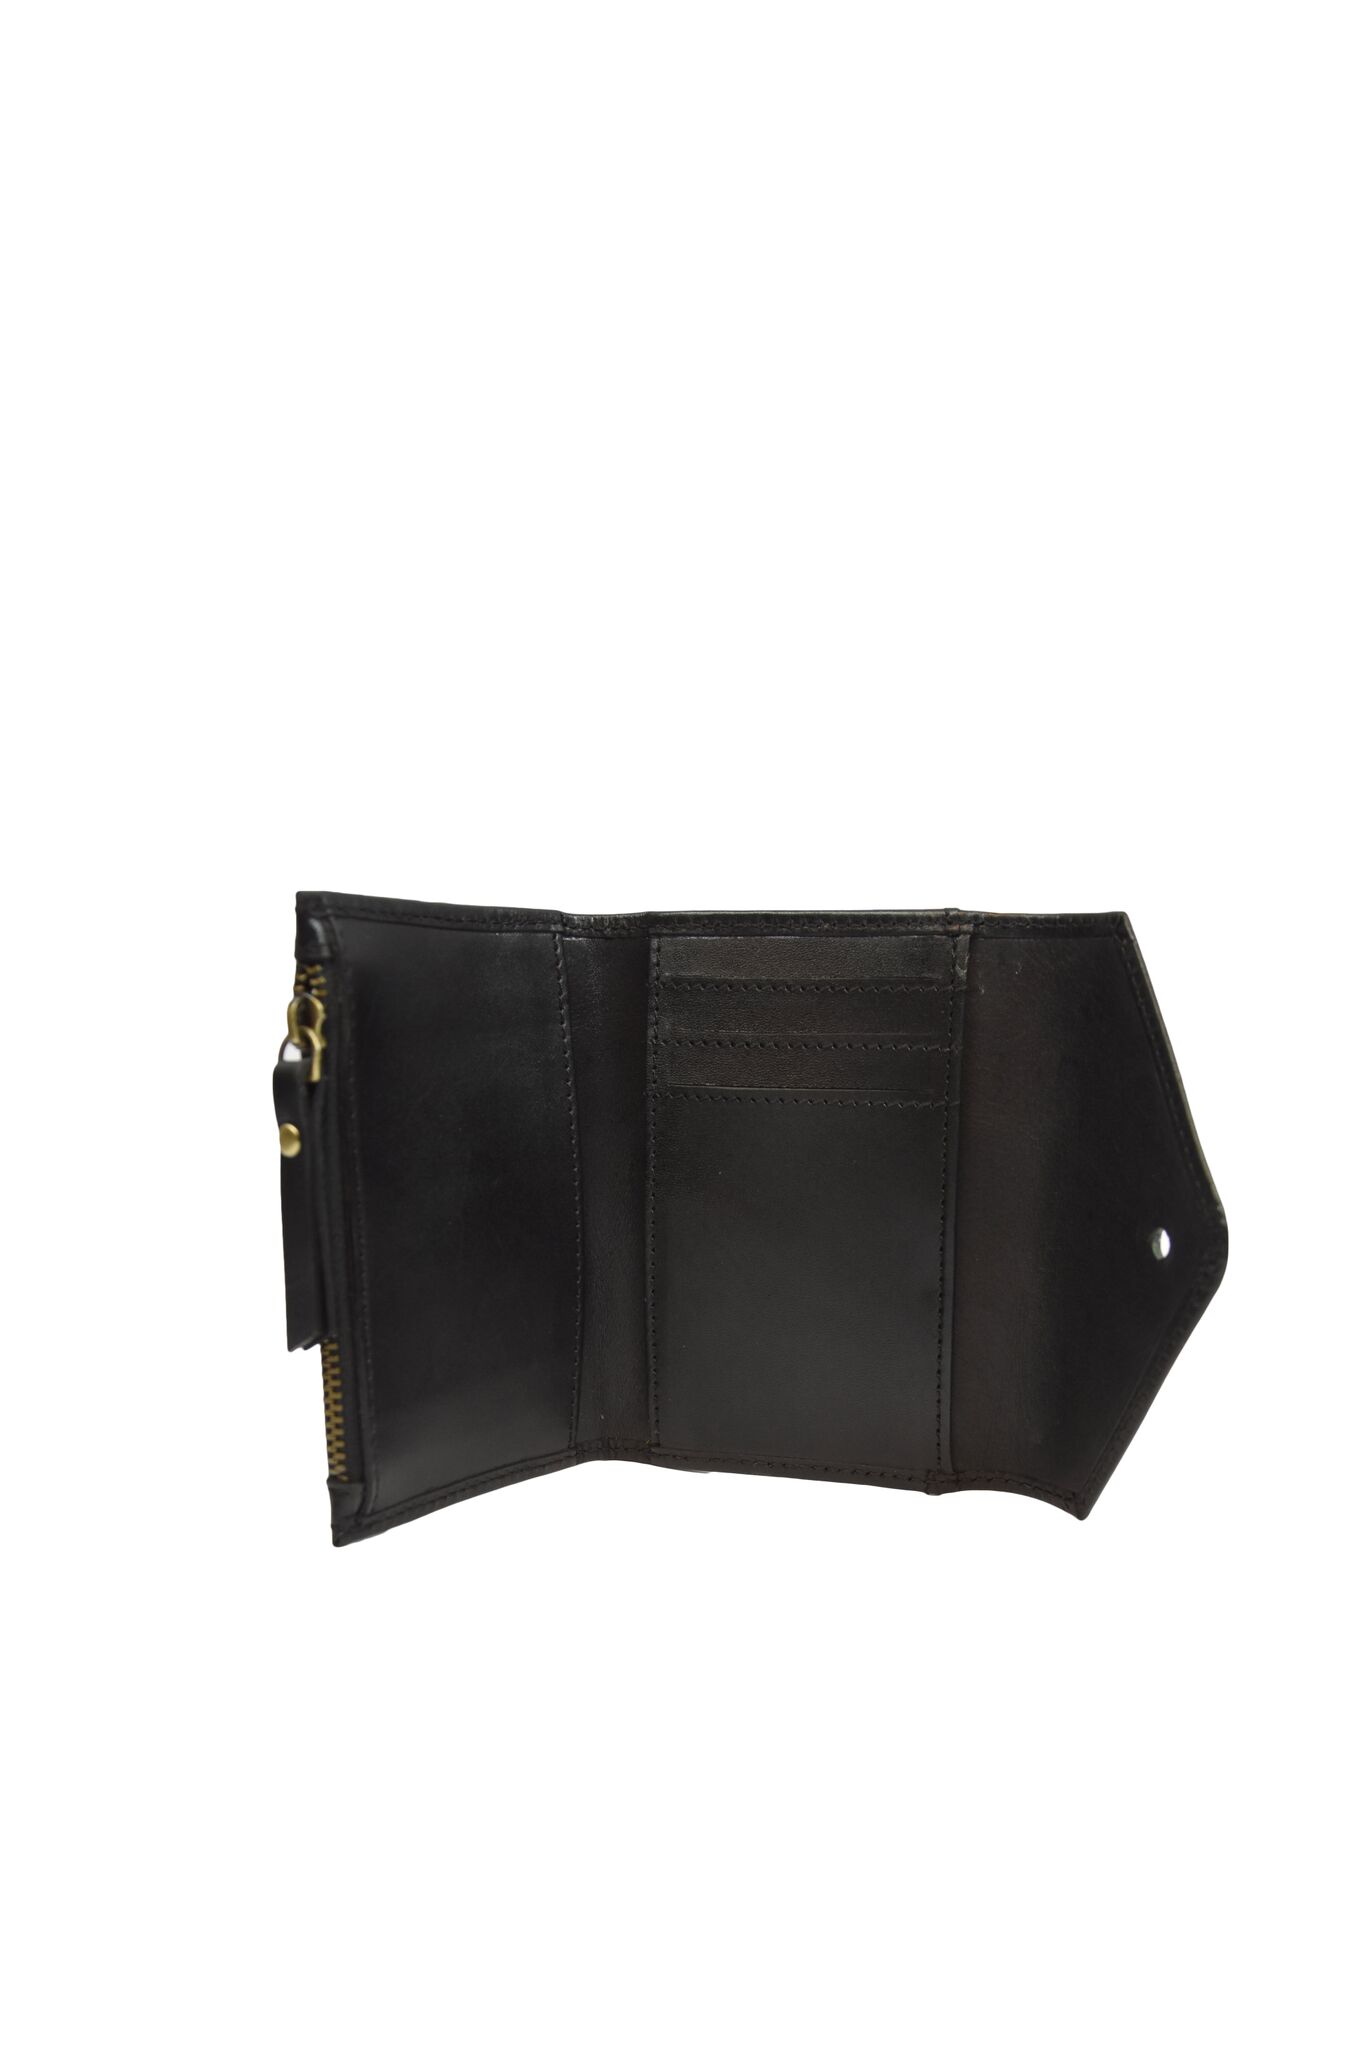 schwarze kleine Ledergeldbörse "Josie's Purse" von O my Bag - Detailansicht Kartenfächer